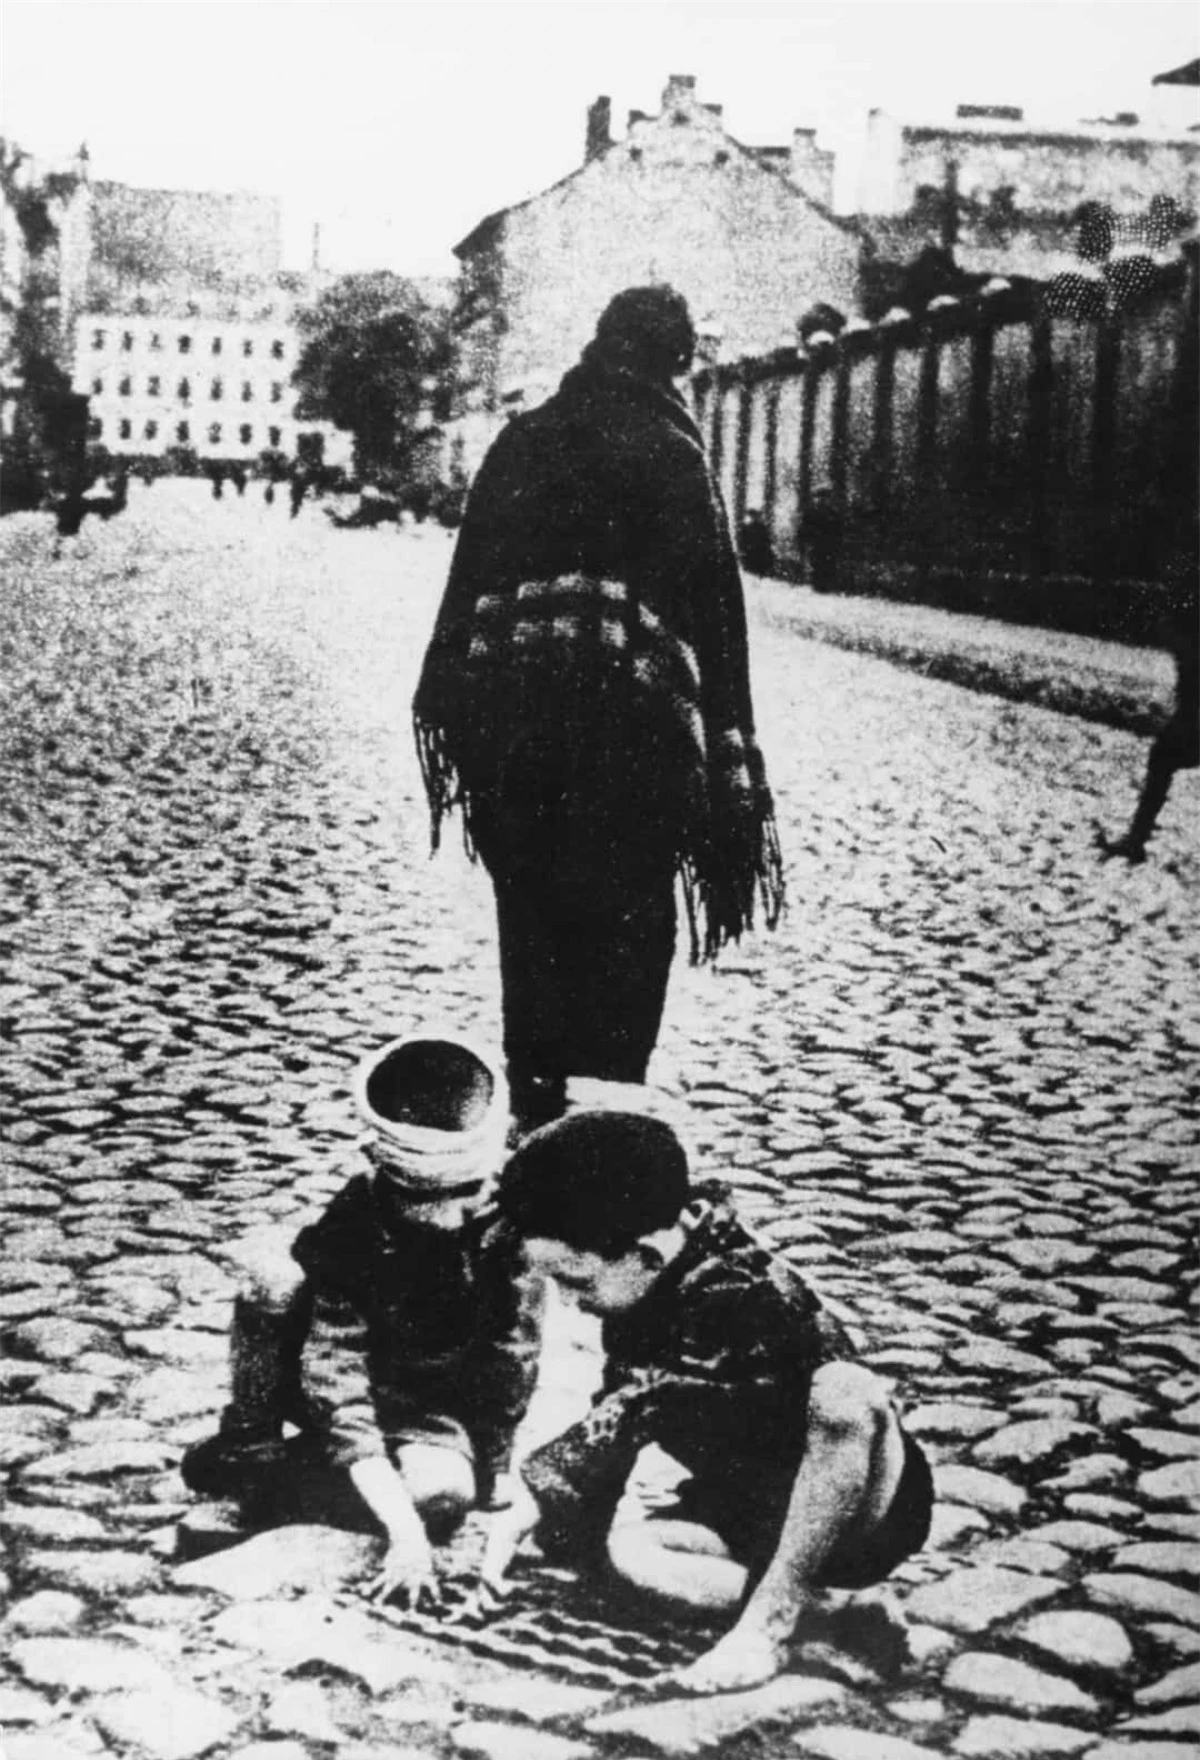 Hơn 1 triệu trẻ em Do Thái đã thiệt mạng trong thảm họa diệt chủng Holocaust do Đức Quốc xã tiến hành trong Thế chiến II.